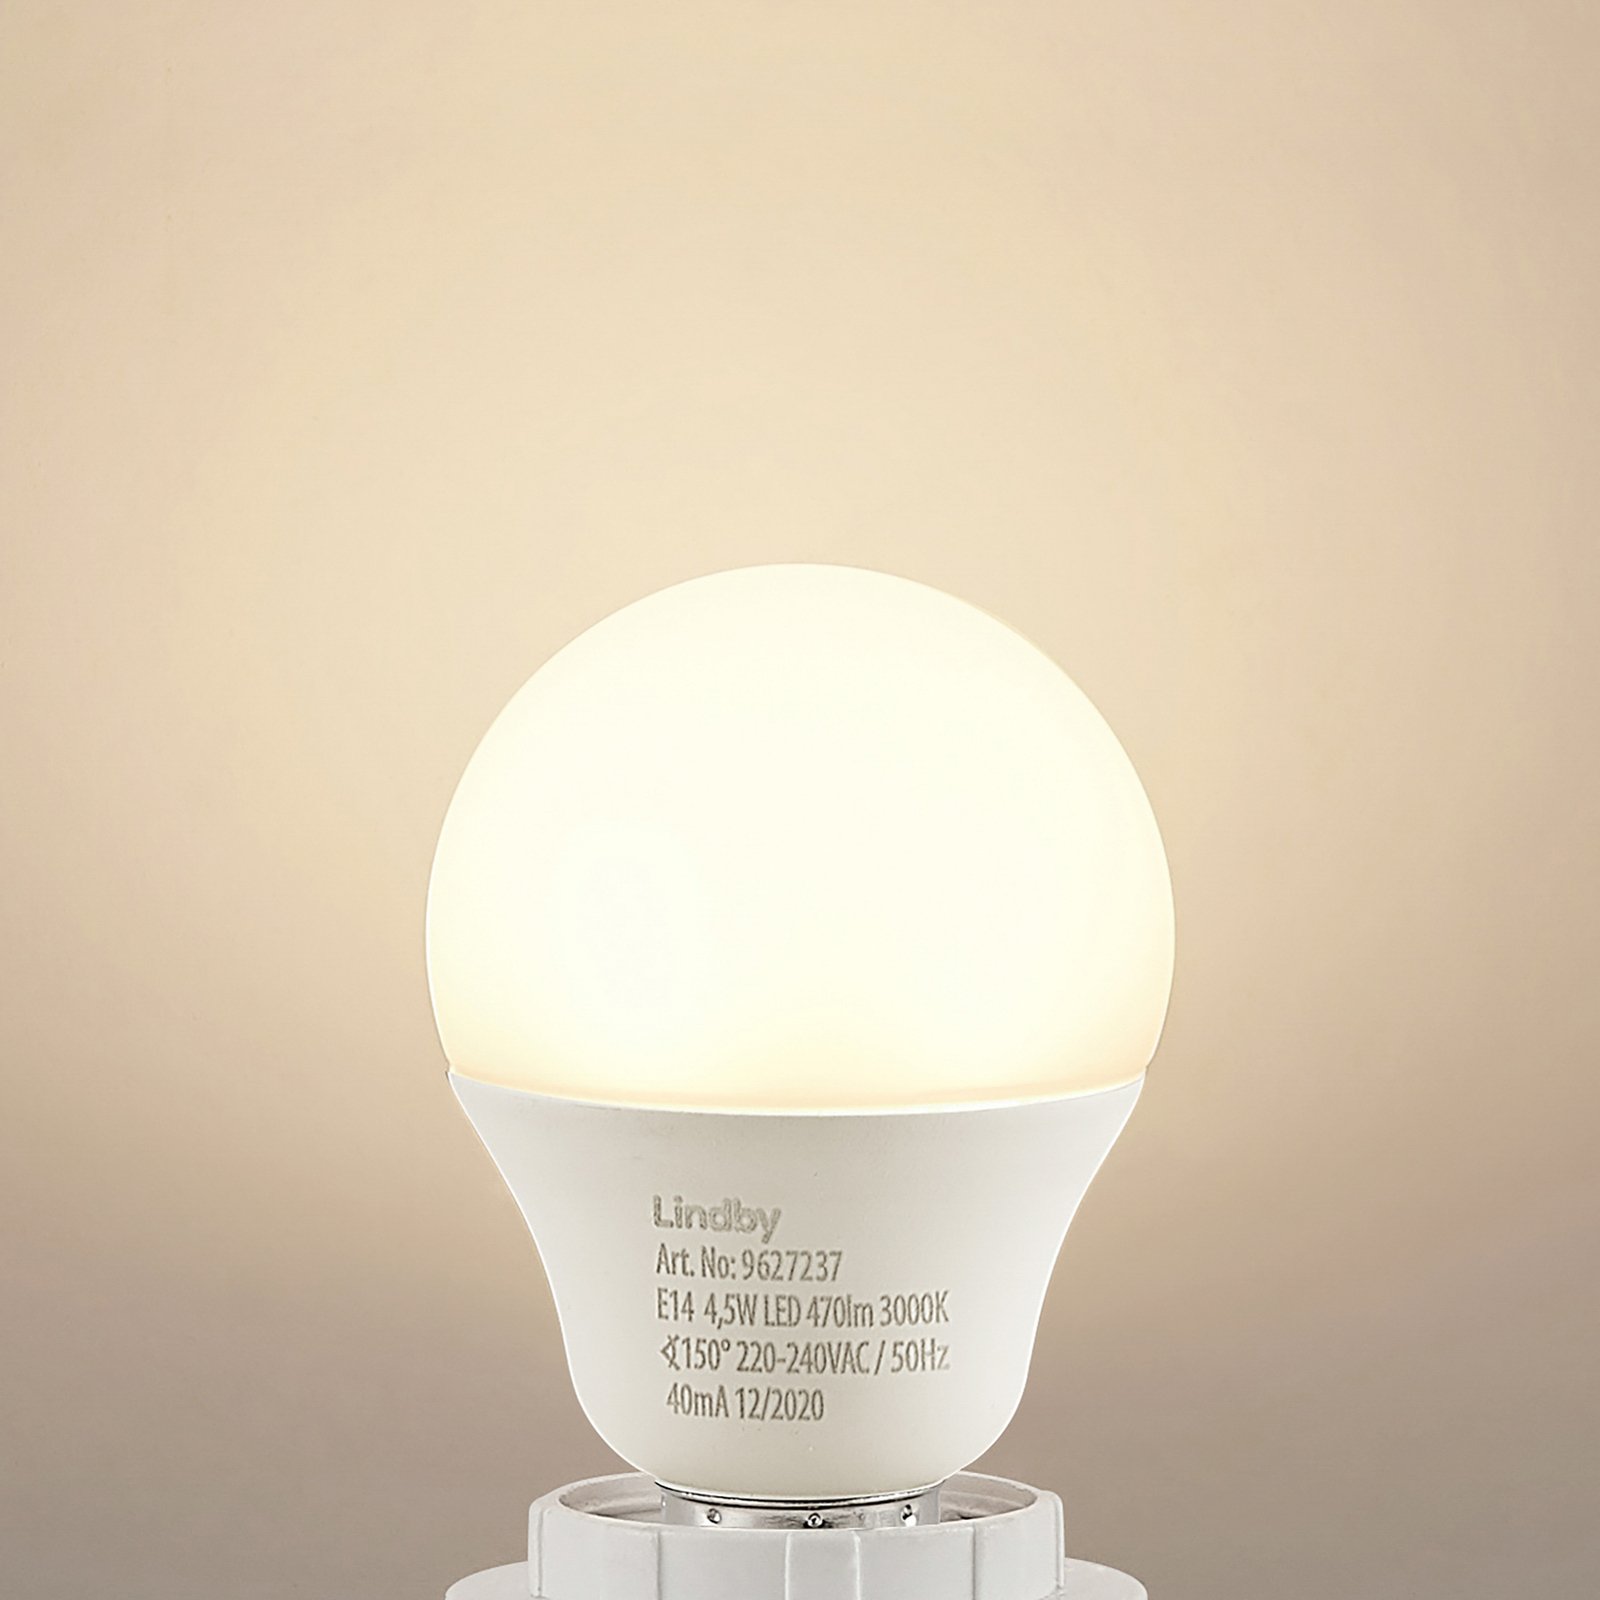 Lindby LED žárovka E14 G45 4,5W 3000K opálová sada 2 kusů